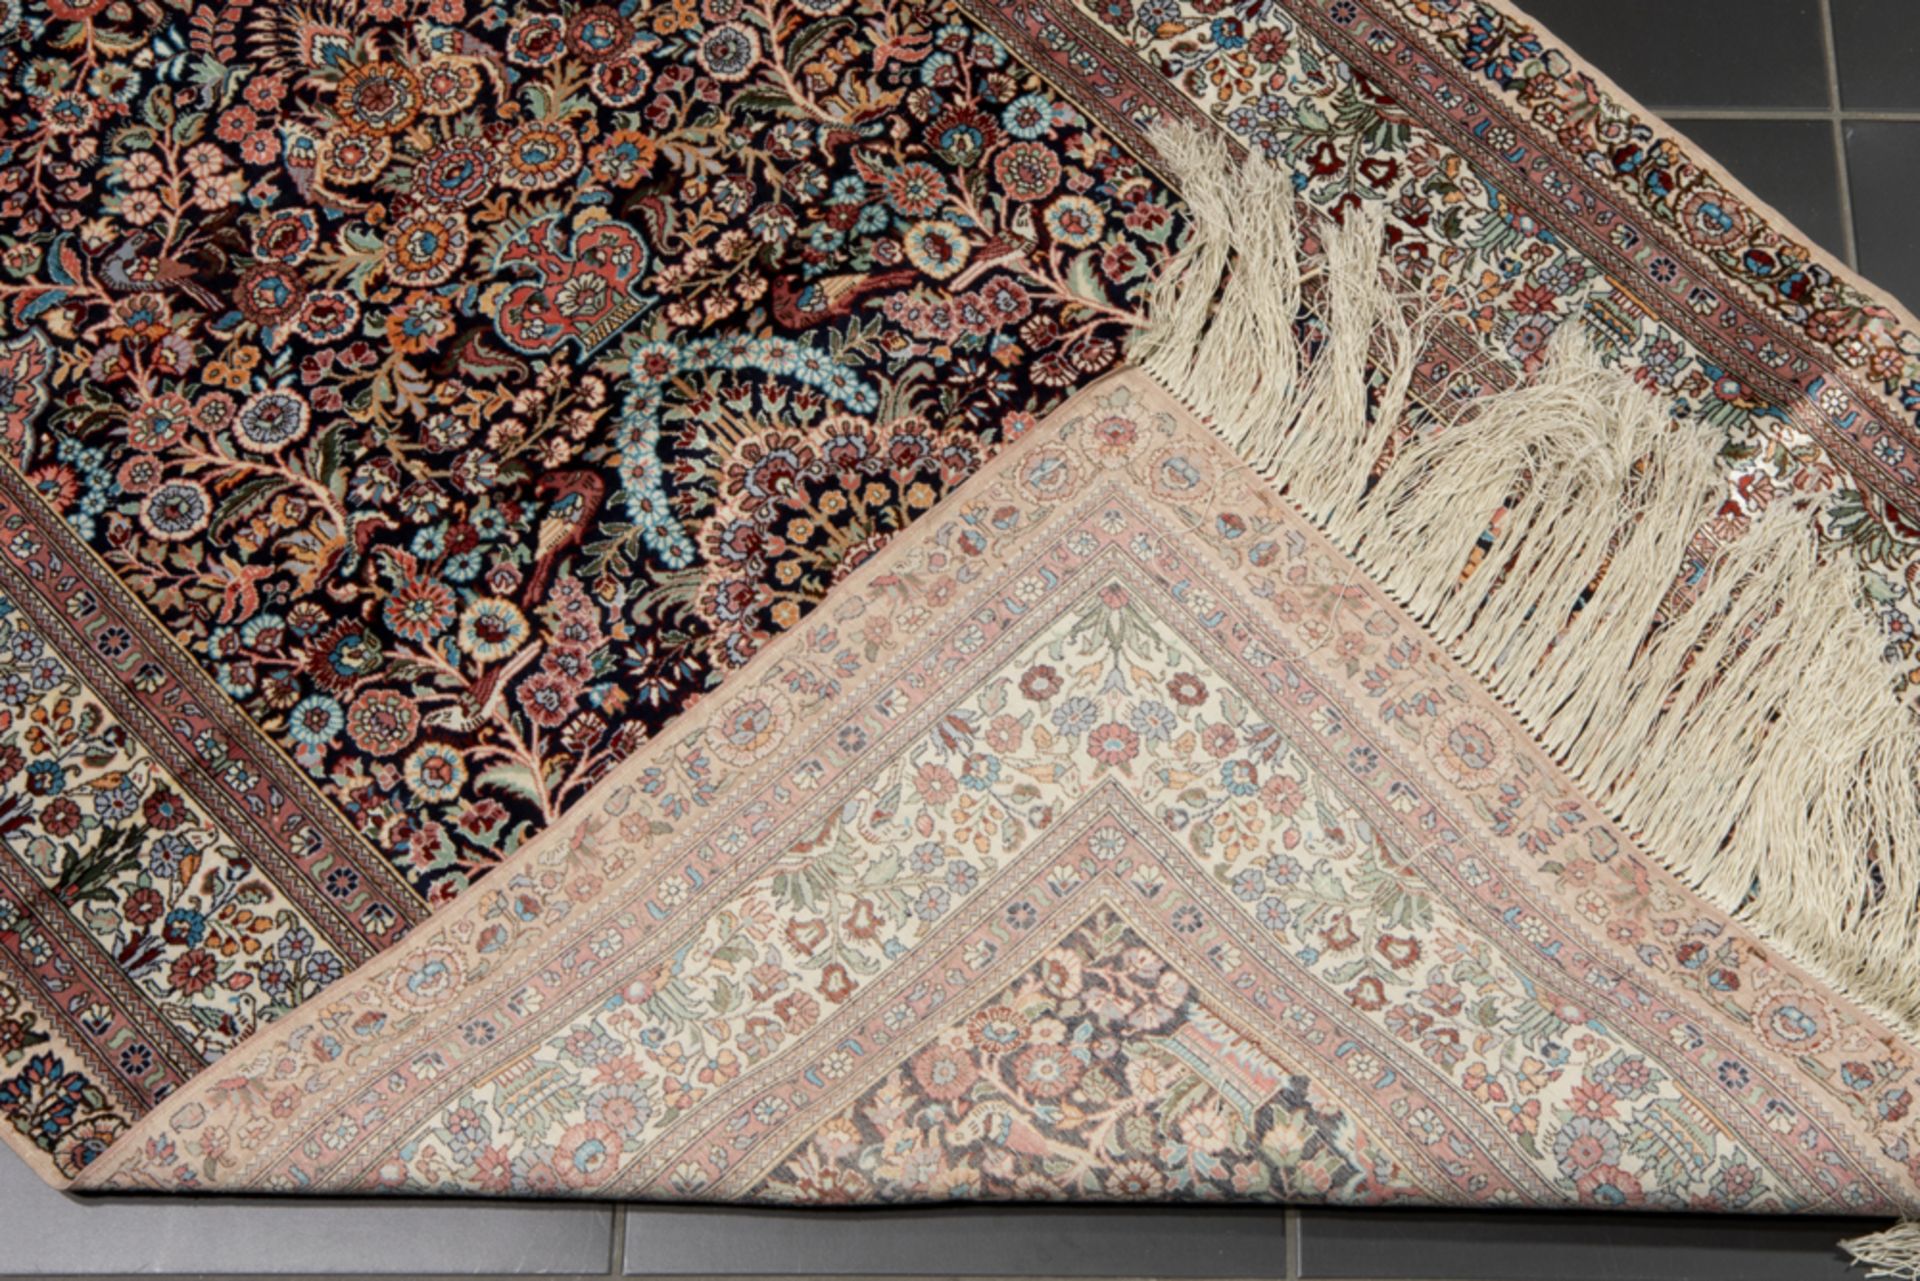 hand knotted praying rug in silk with a typical mihrab || Saph in zijde op zijde met een bidtekening - Bild 2 aus 2